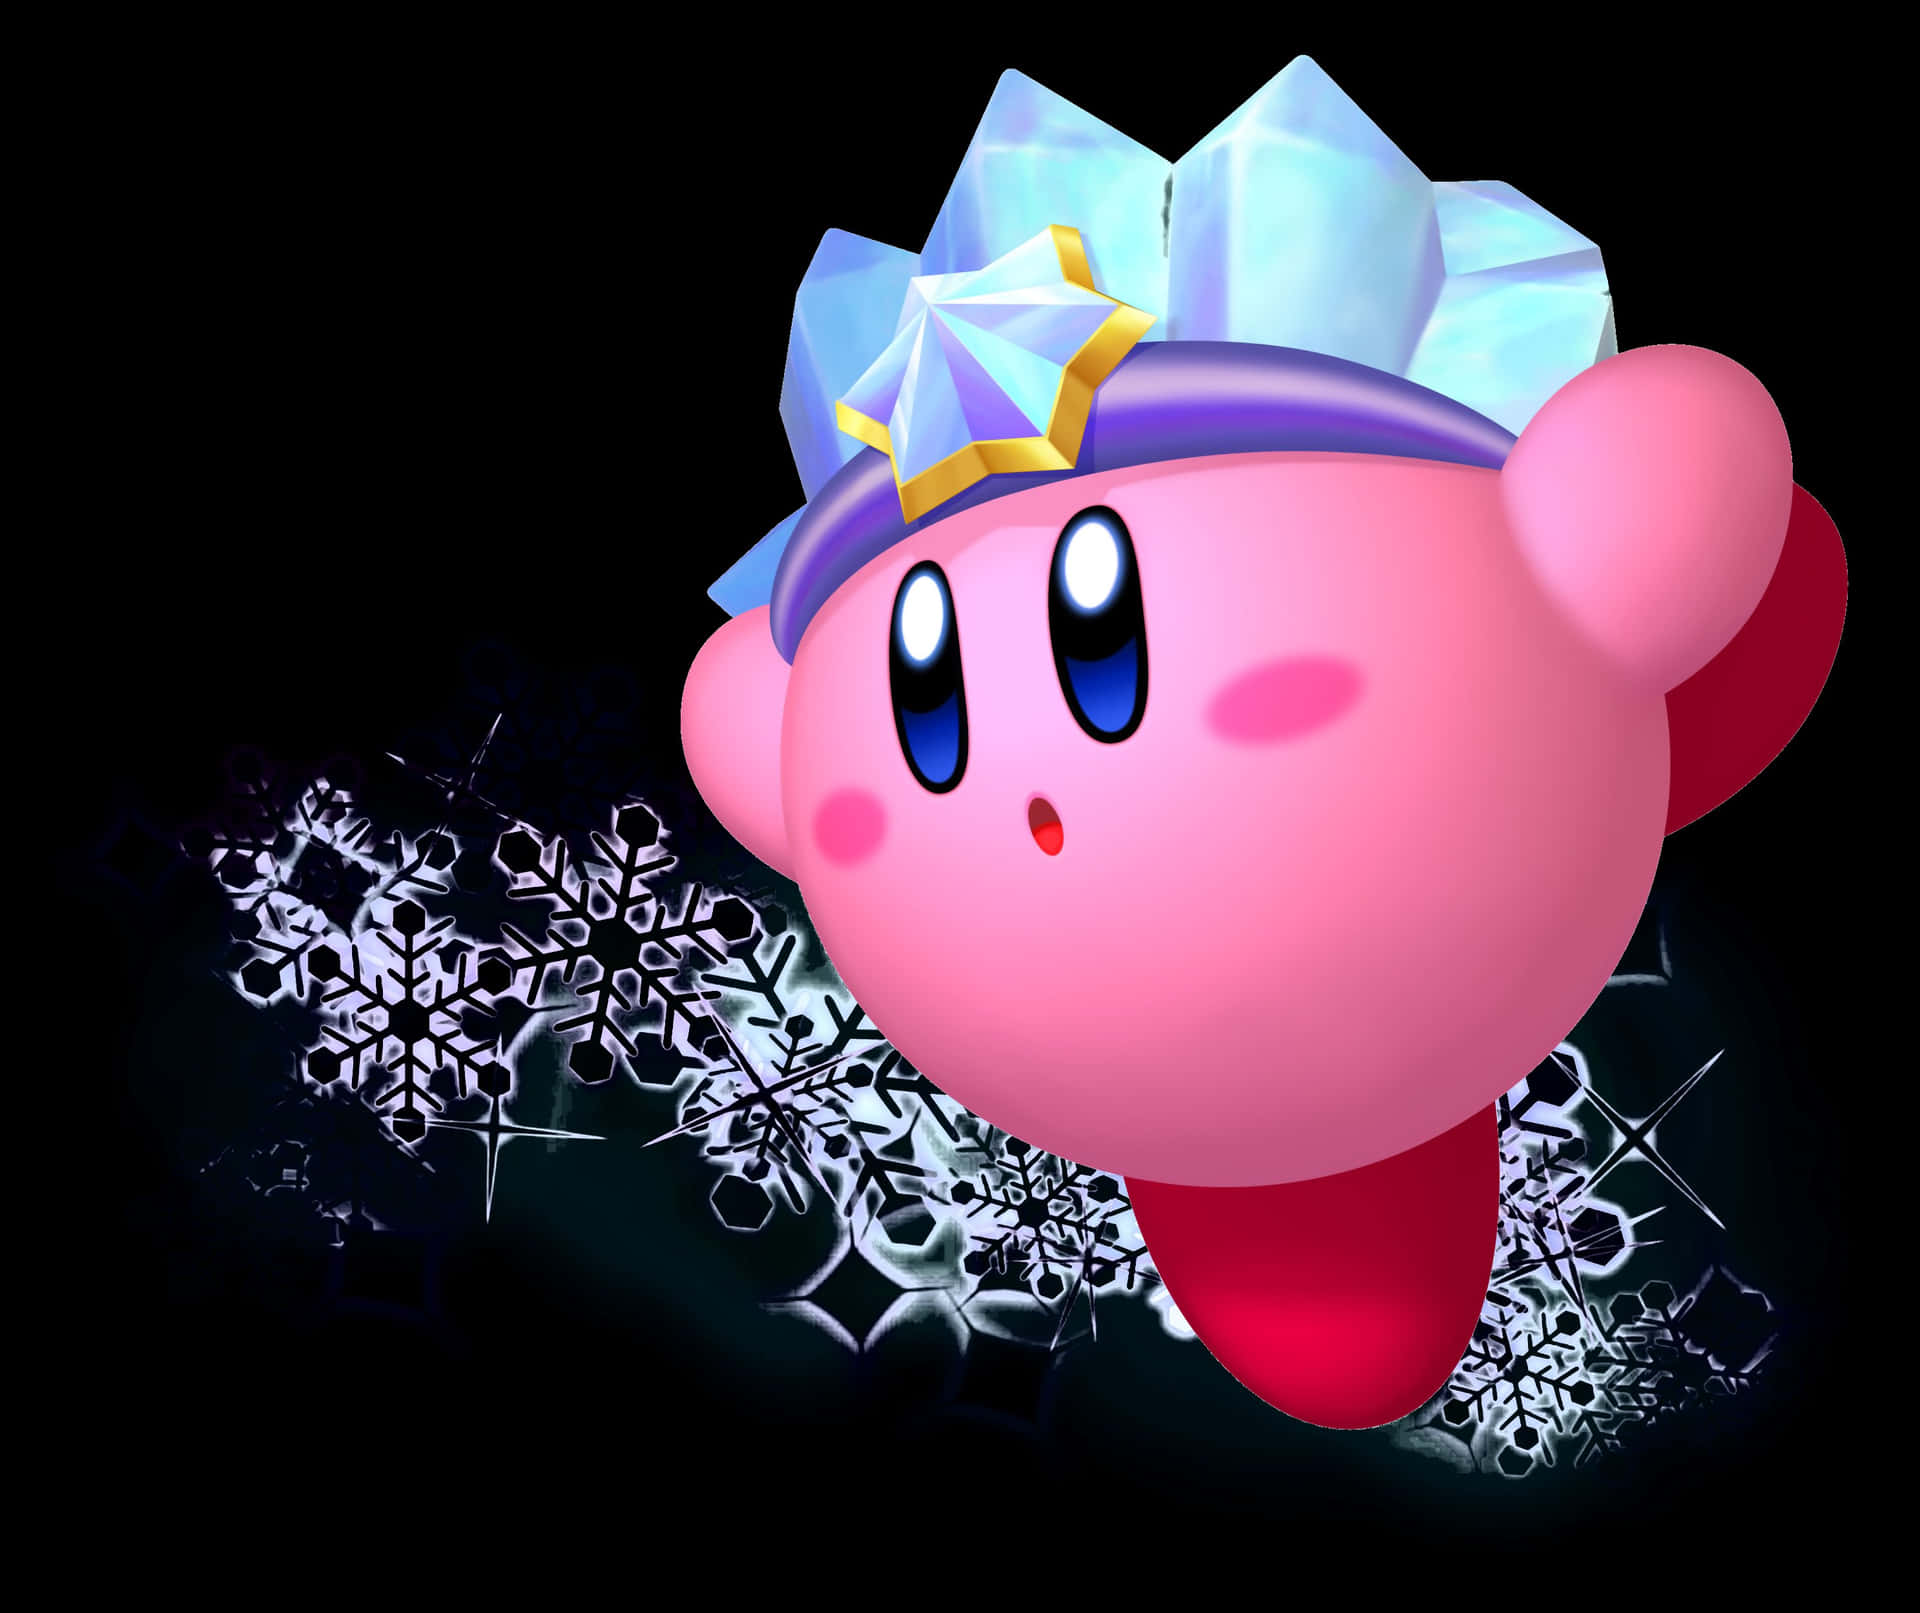 Erkundedie Welt Von Dream Land Mit Kirby!